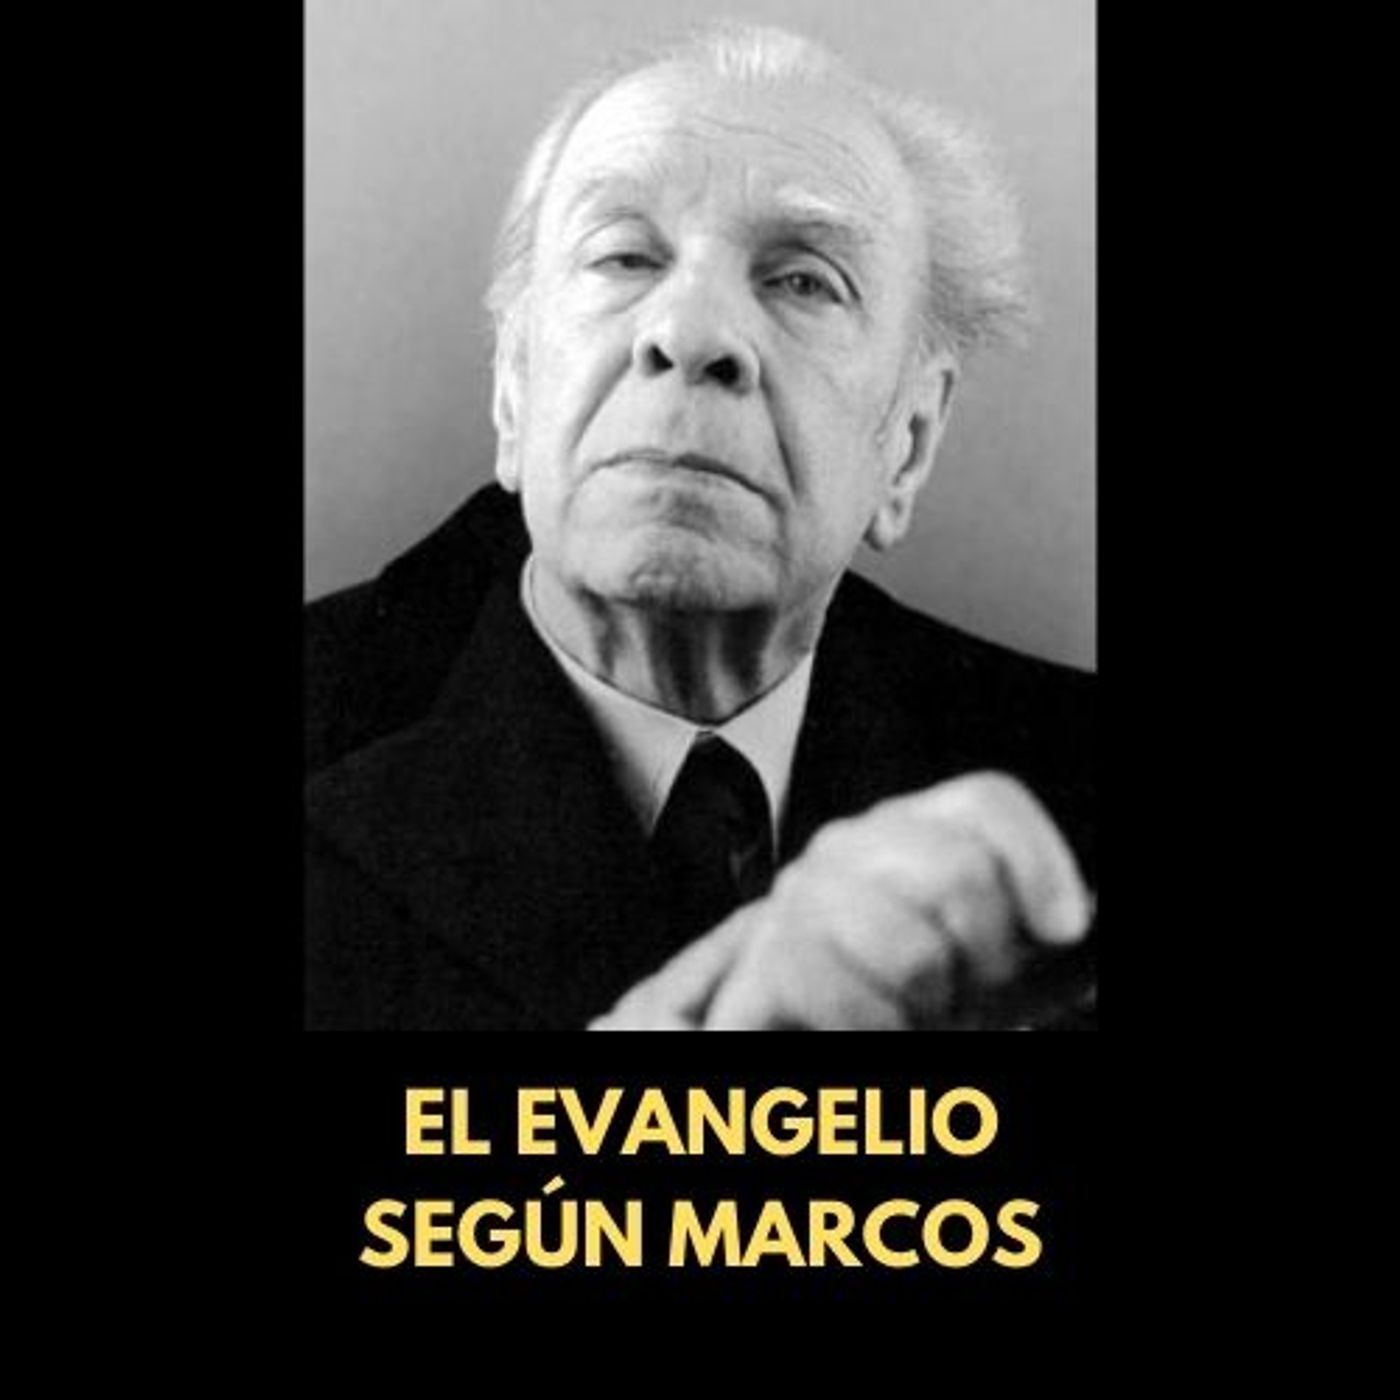 En poco más de cinco minutos: "El evangelio según Marcos" de Jorge Luis Borges